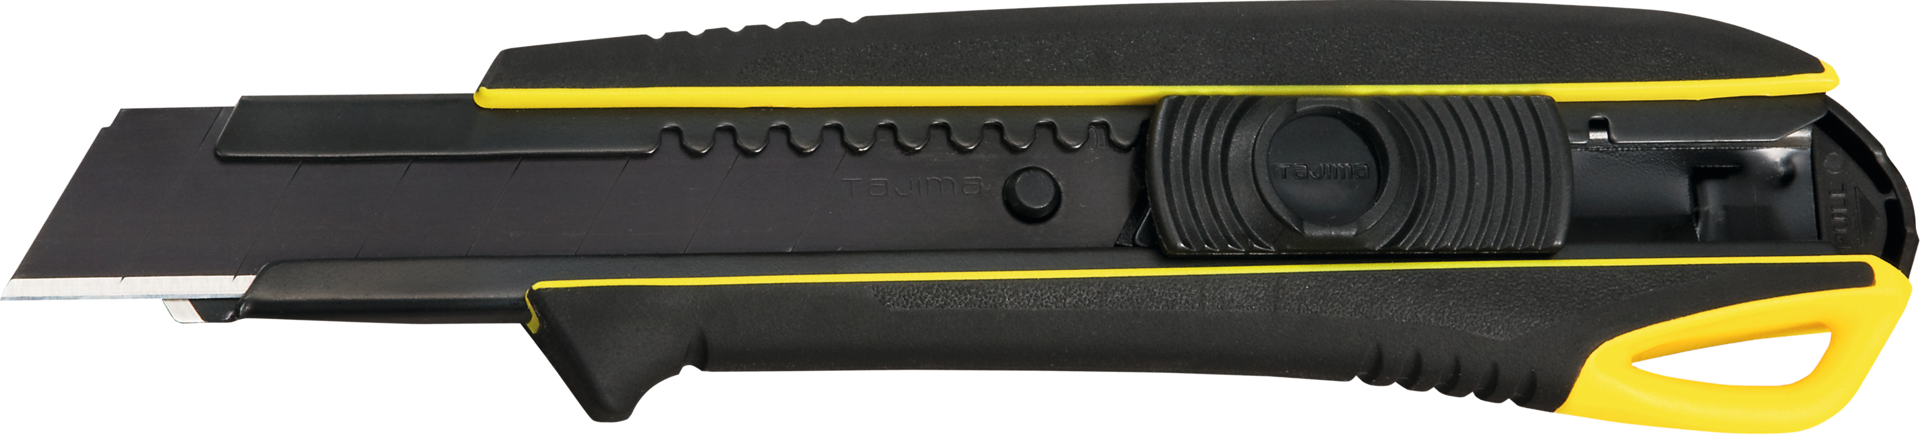 Messer Abbrechklinge 18mm Driver Cutter™ DC560 + 13 Klingen Razar Black Cuttermesser